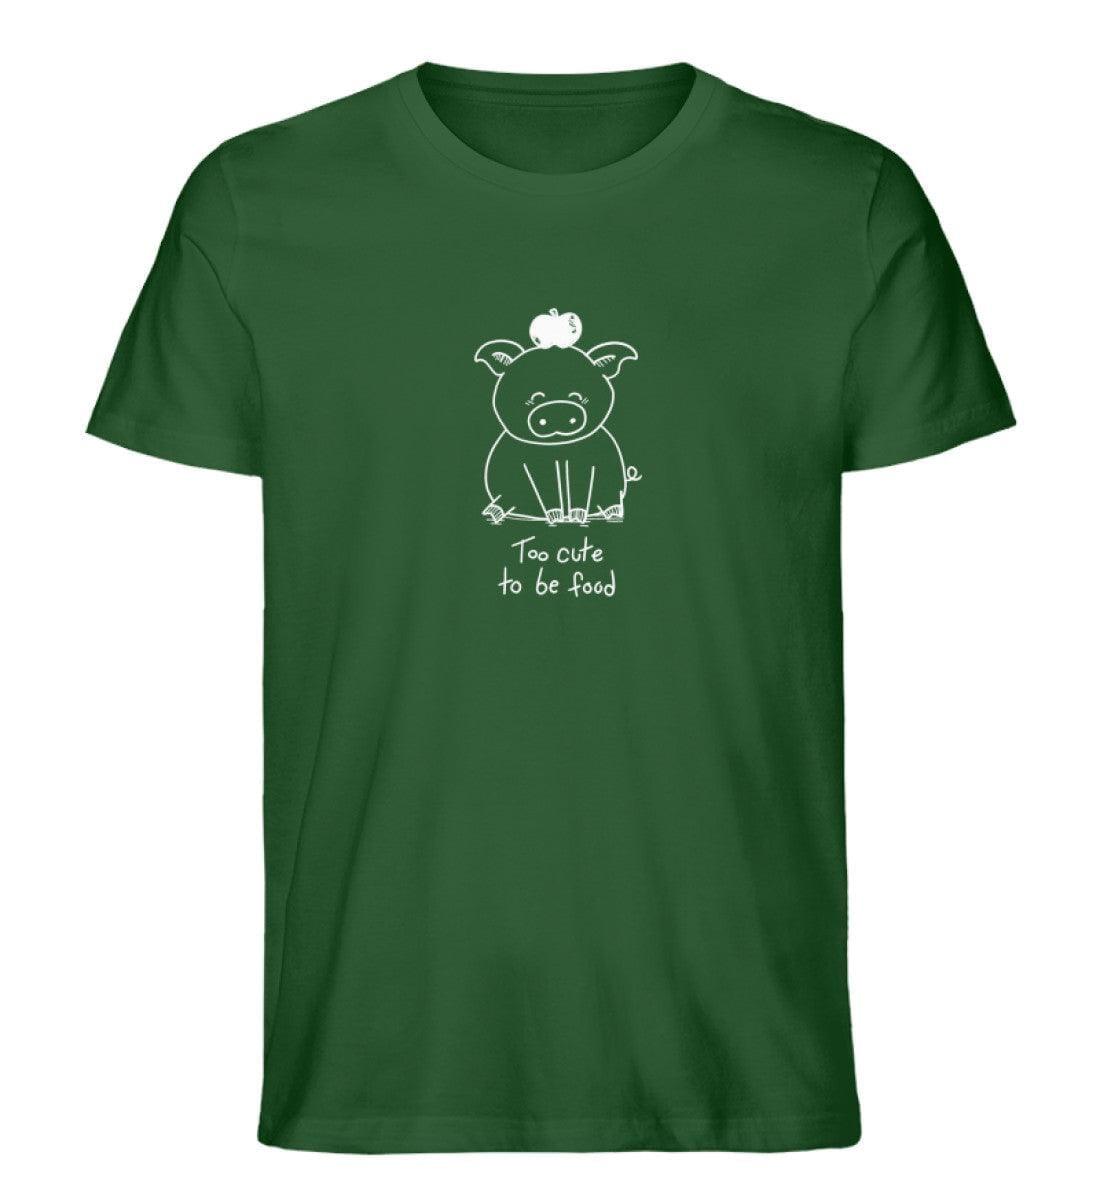 Too cute [Herr Tierfreund] - Unisex Organic Shirt Shirtee Dunkelgrün S 